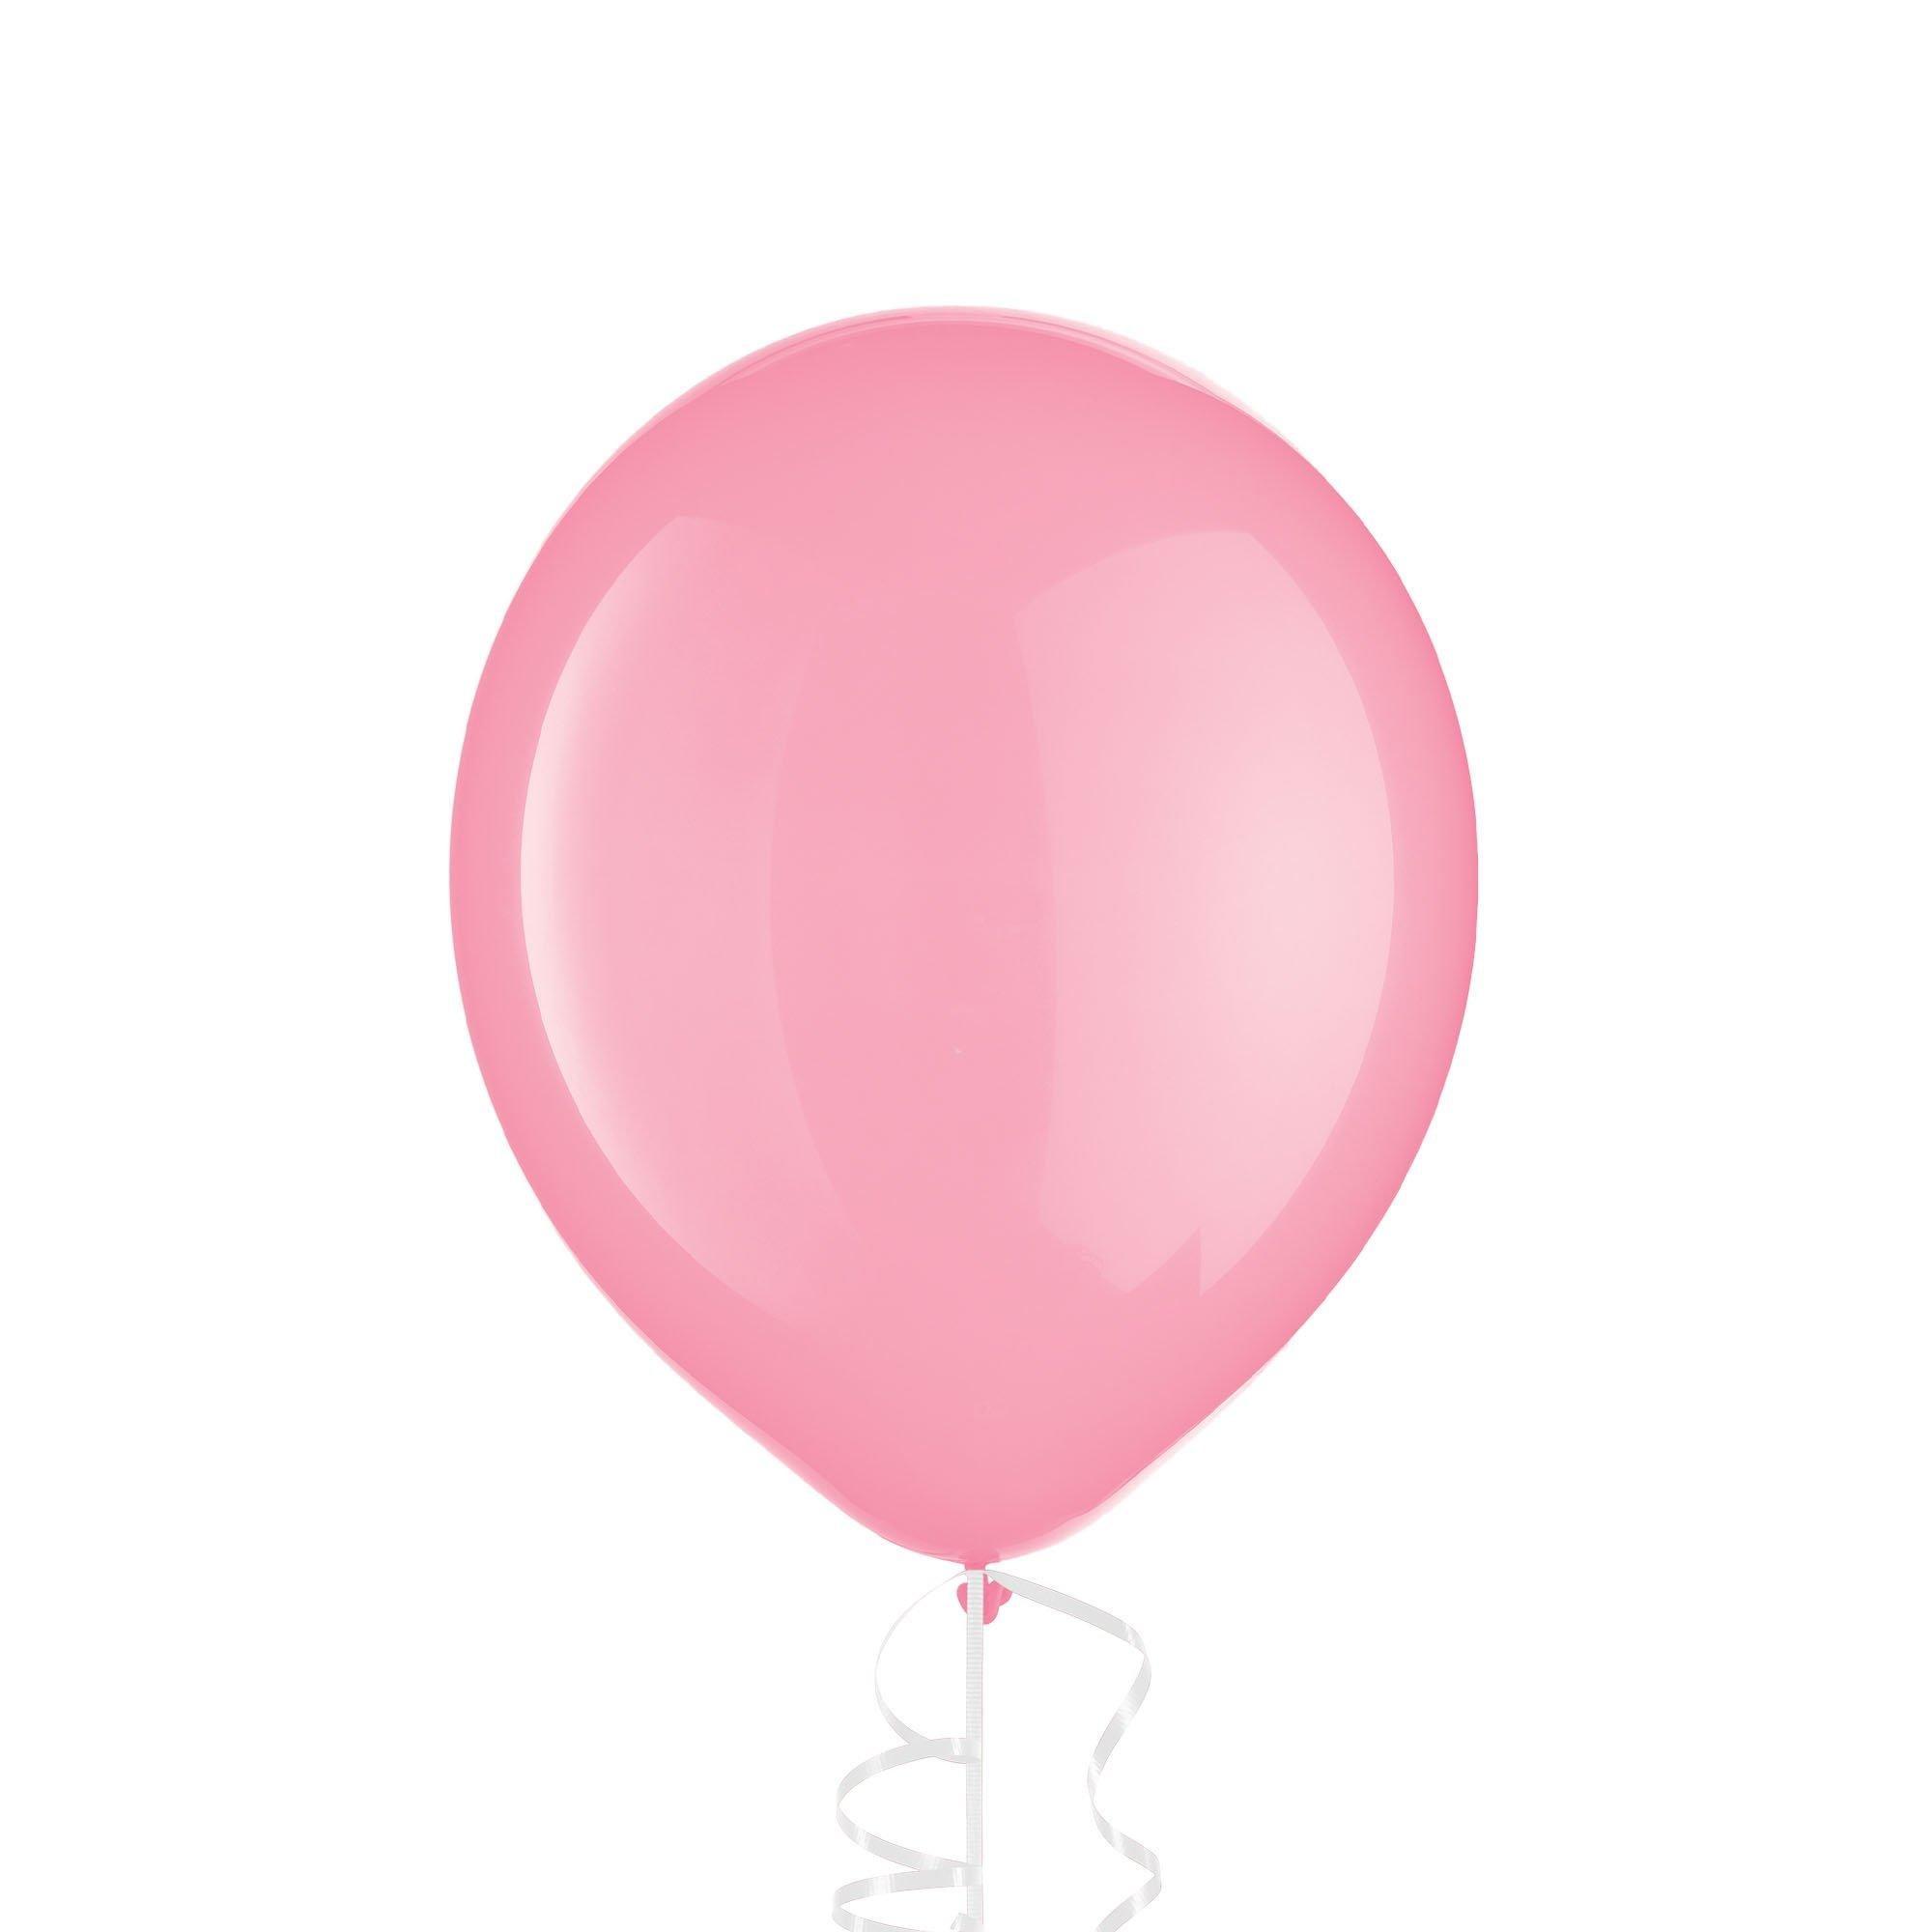 Ballon en aluminium Peppa Pig™ 46 cm - Vegaooparty